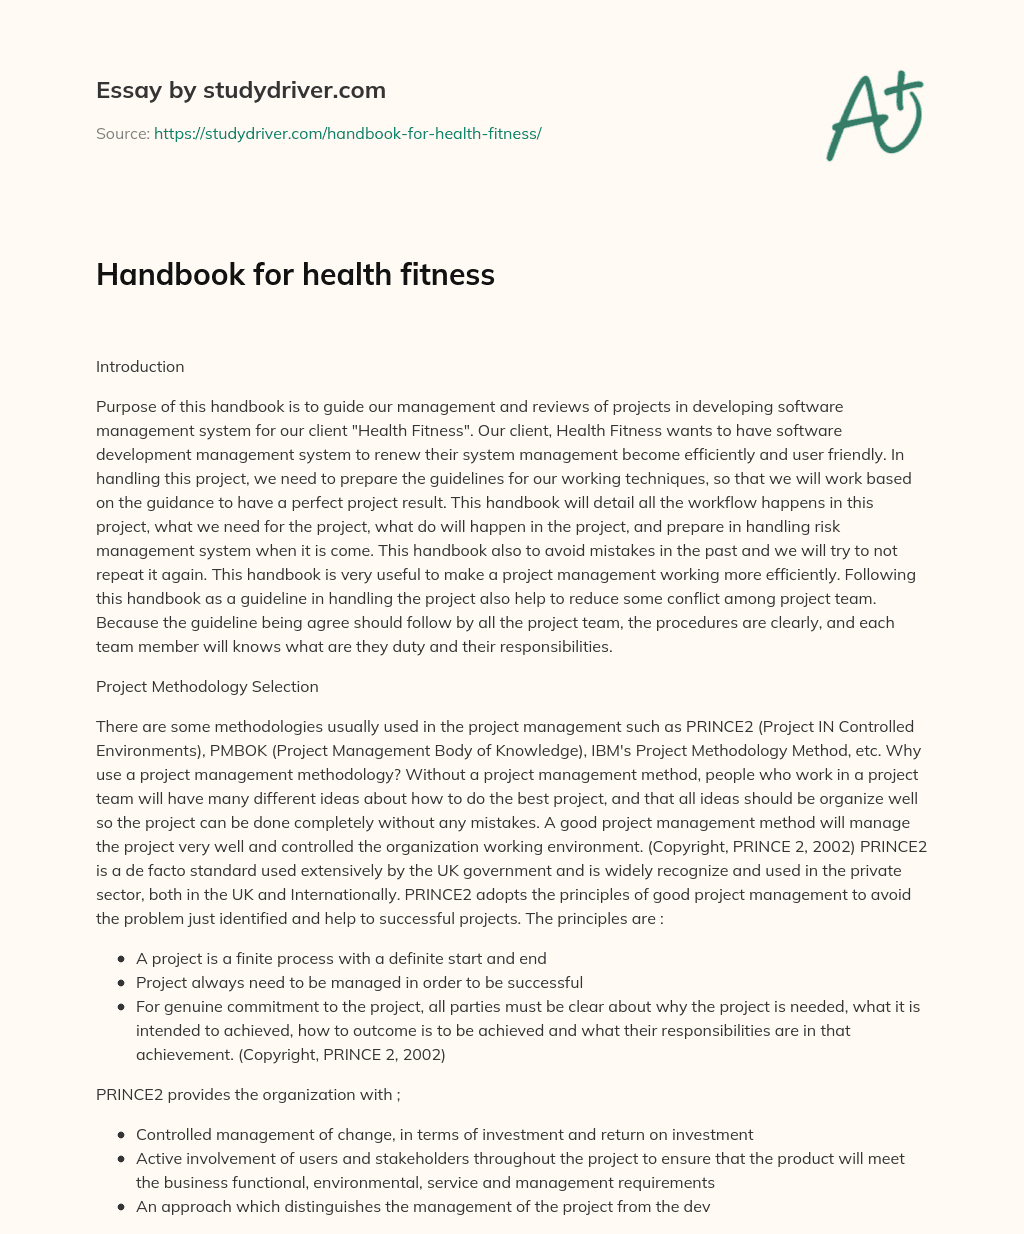 Handbook for Health Fitness essay